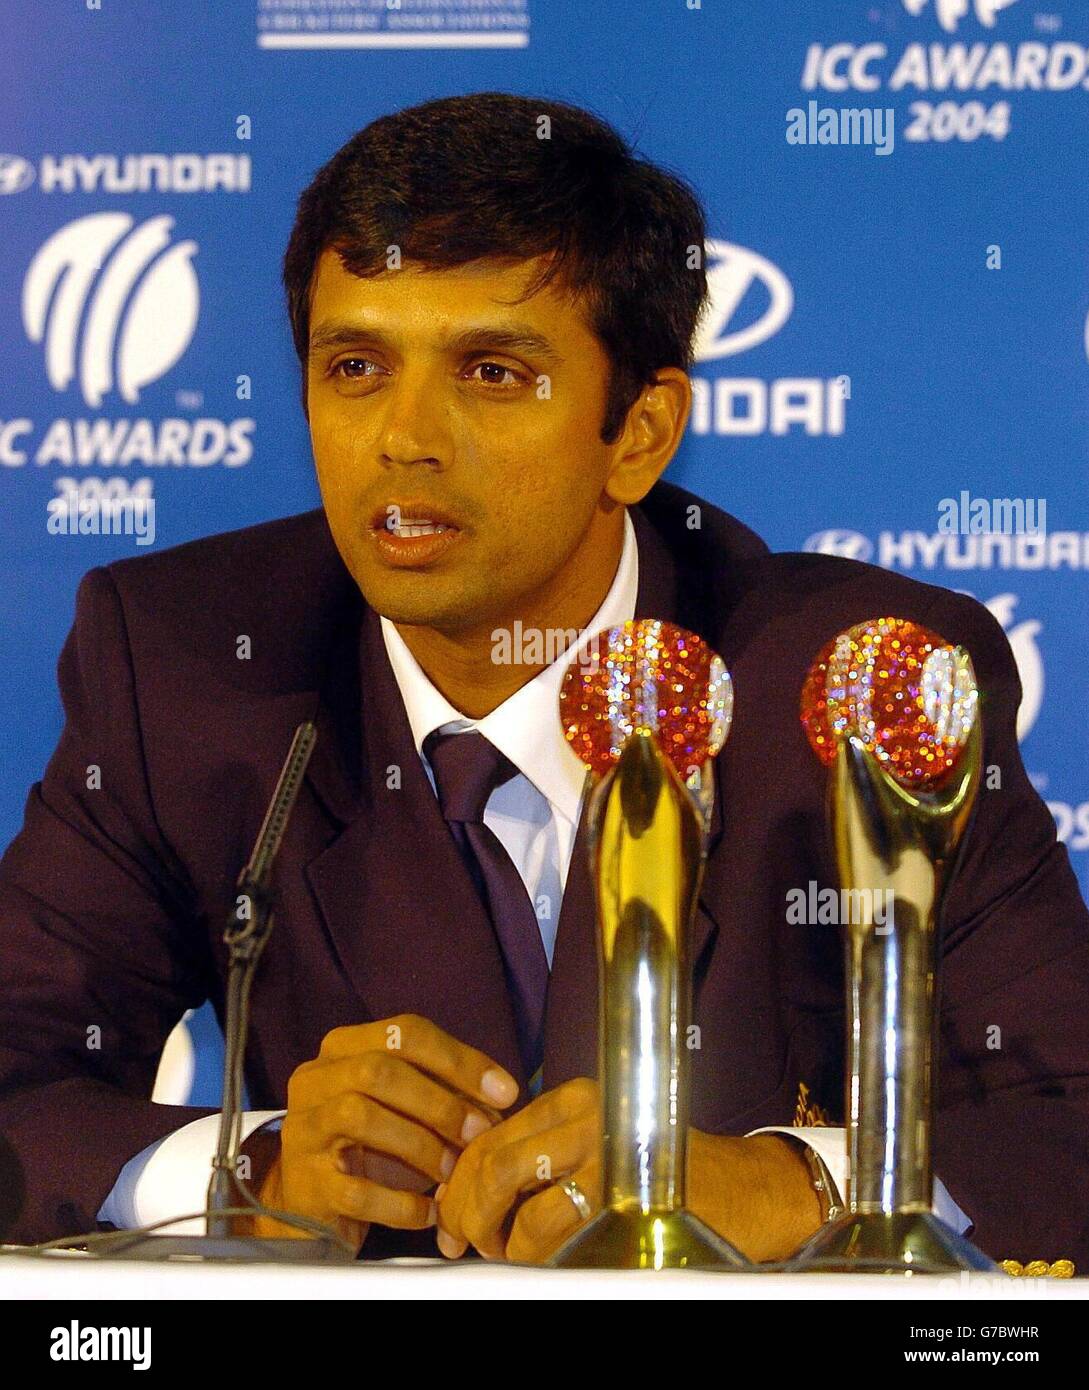 Der indische Rahul Dravid, nachdem er den International Cricket Council Award für den Testspieler des Jahres und die große Auszeichnung der Nacht für den kombinierten Test und den eintägigen Spieler des Jahres erhalten hatte, Nach einem hervorragenden Jahr in beiden Formaten des Spiels bei der ICC-Preisverleihung in Alexandra Palace, North London. Stockfoto